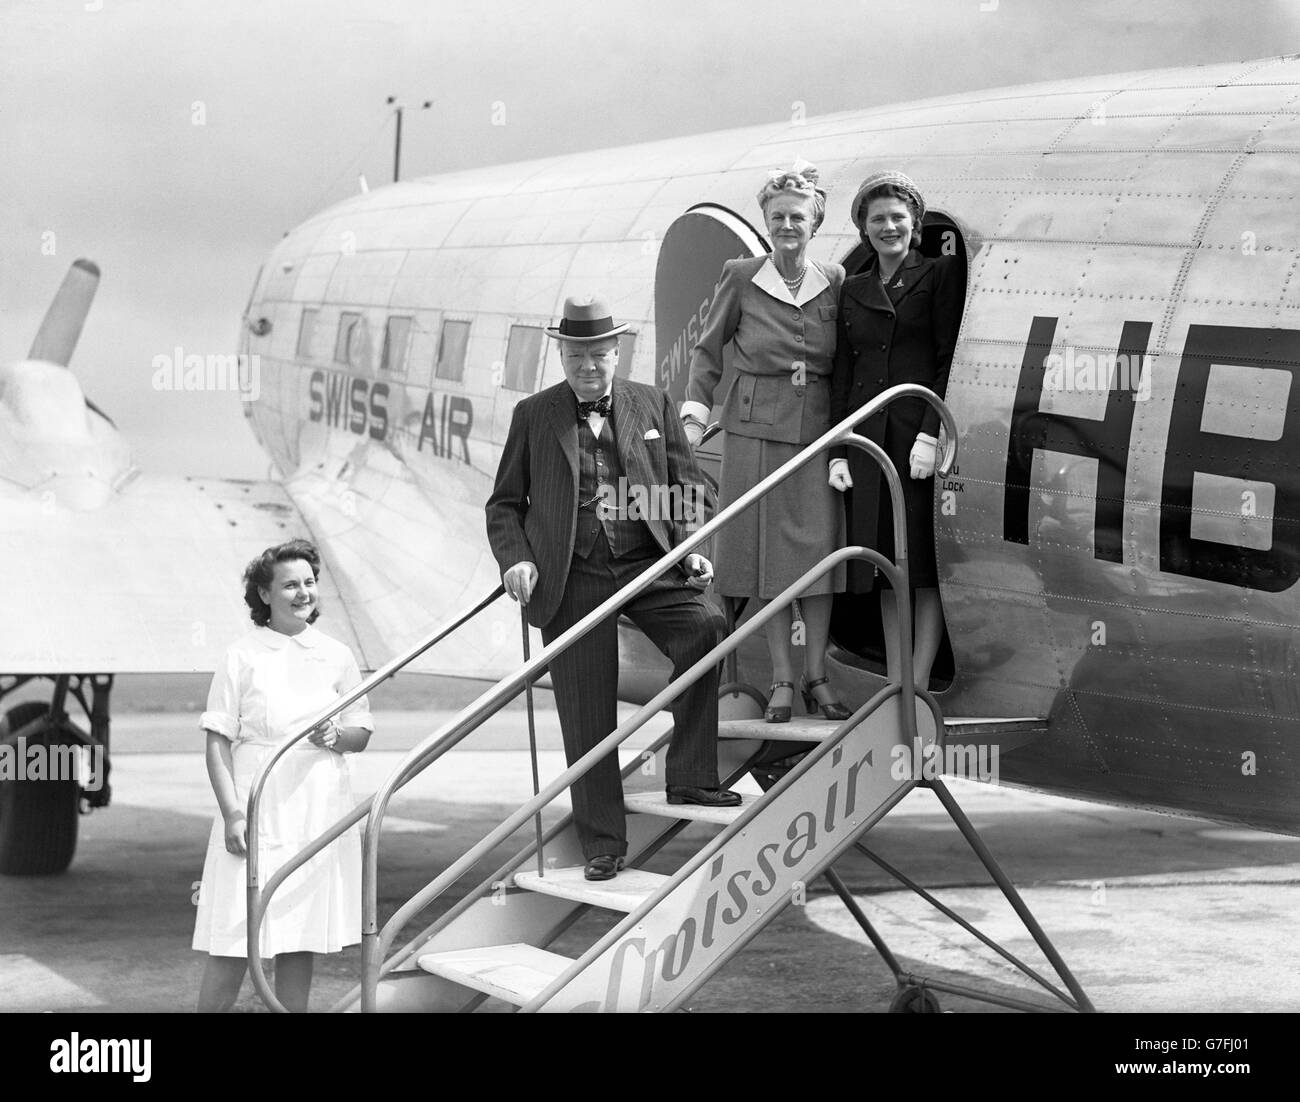 Herr und Frau Churchill, zusammen mit Frau Mary Churchill, auf den Stufen ihres Flugzeugs auf dem Flugplatz Biggin Hill in London, bevor sie in die Schweiz aufbricht. Sie besuchen Schweizer Freunde, die ihnen eine Villa am Genfer See zur Verfügung gestellt haben. Stockfoto